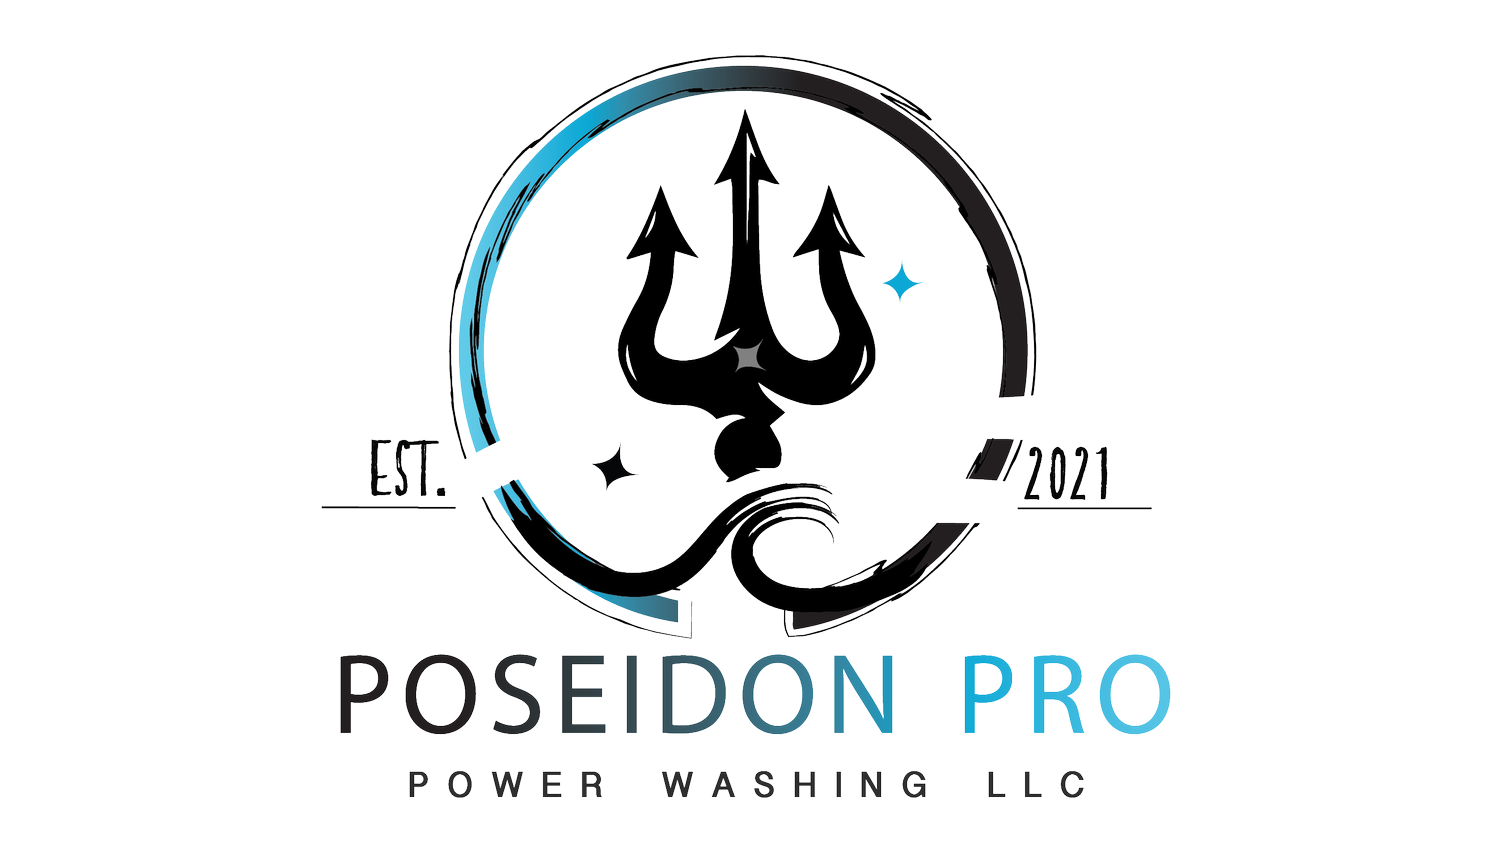 Poseidon Pro Power Washing LLC 